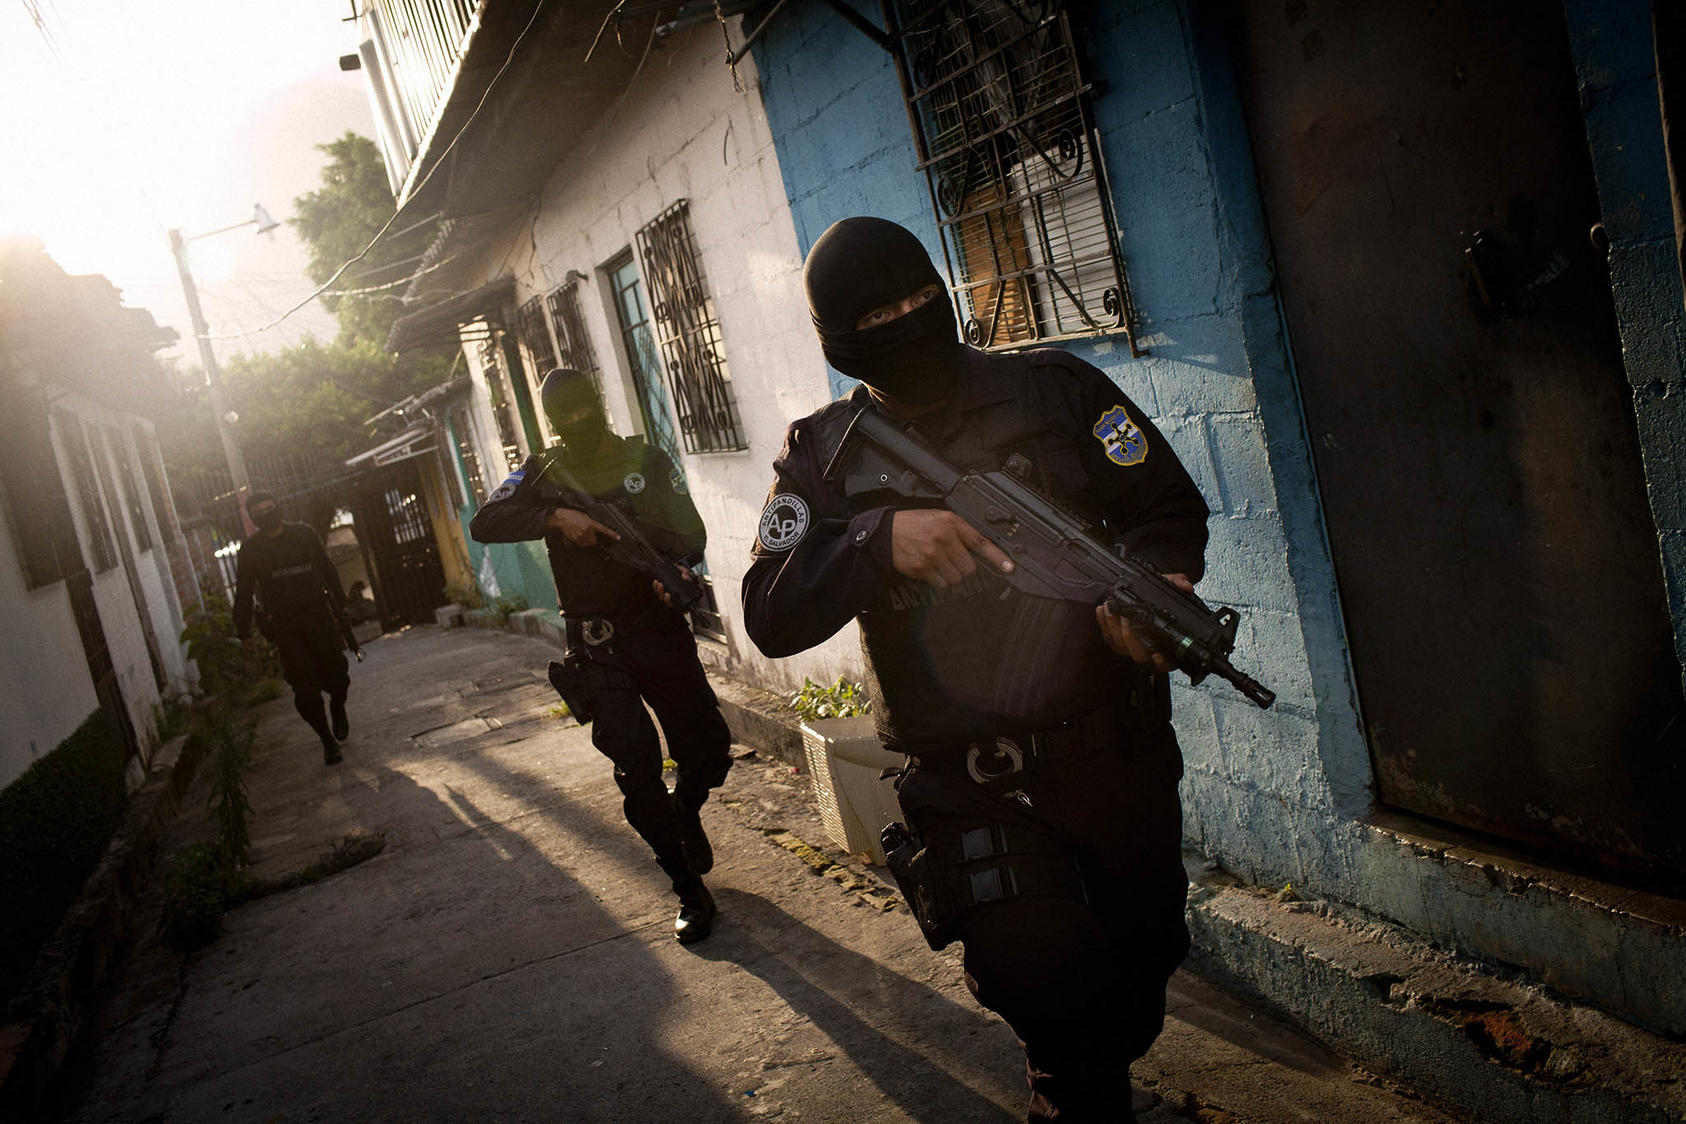 Miembros de una fuerza policial antipandillas en San Salvador, El Salvador. Bajo la presidencia de Nayib Bukele, el gobierno salvadoreño ha iniciado una campaña antipandillas sin precedentes. (Tomás Munita/The New York Times)